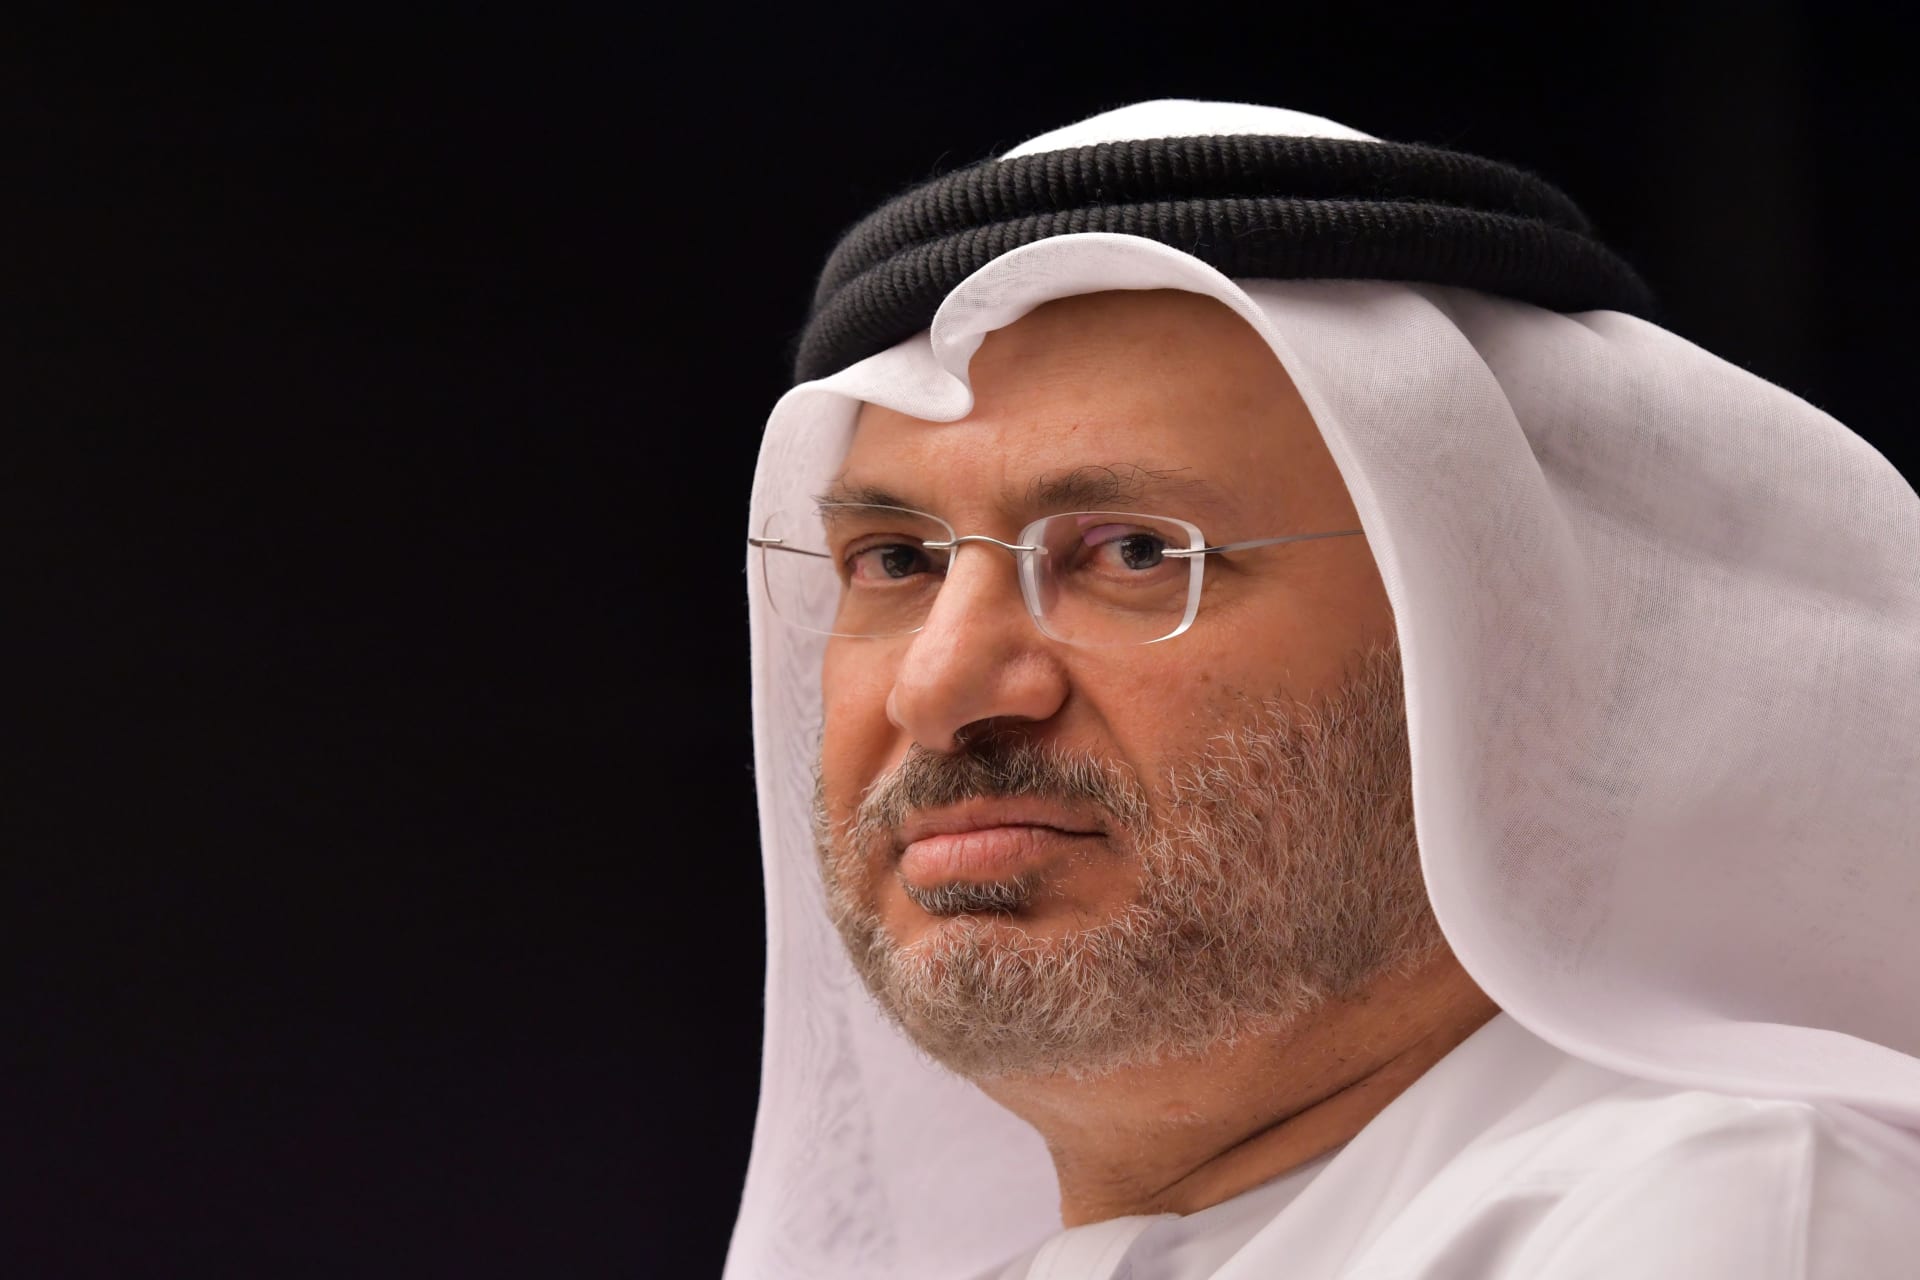 قرقاش: فرصة فريدة من نوعها لتغيير مشروع قطر الشخصي منذ 1995.. ,الأزمة تتمحور حول "دولة غنية جداً" تروّج للتطرف